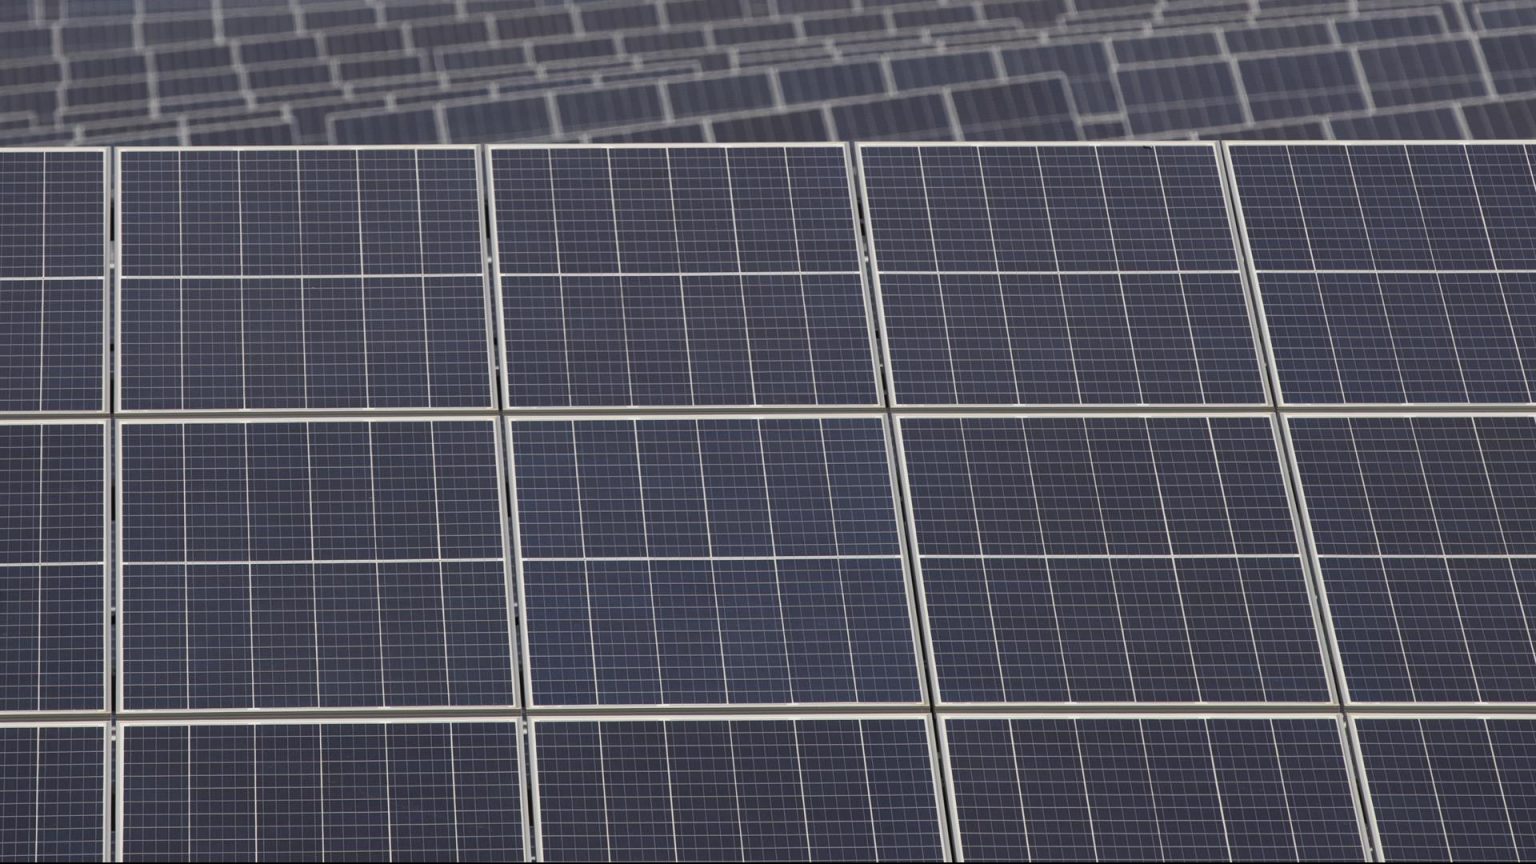 Endesa pone en marcha ocho plantas solares en Badajoz con una potencia de 388 MW